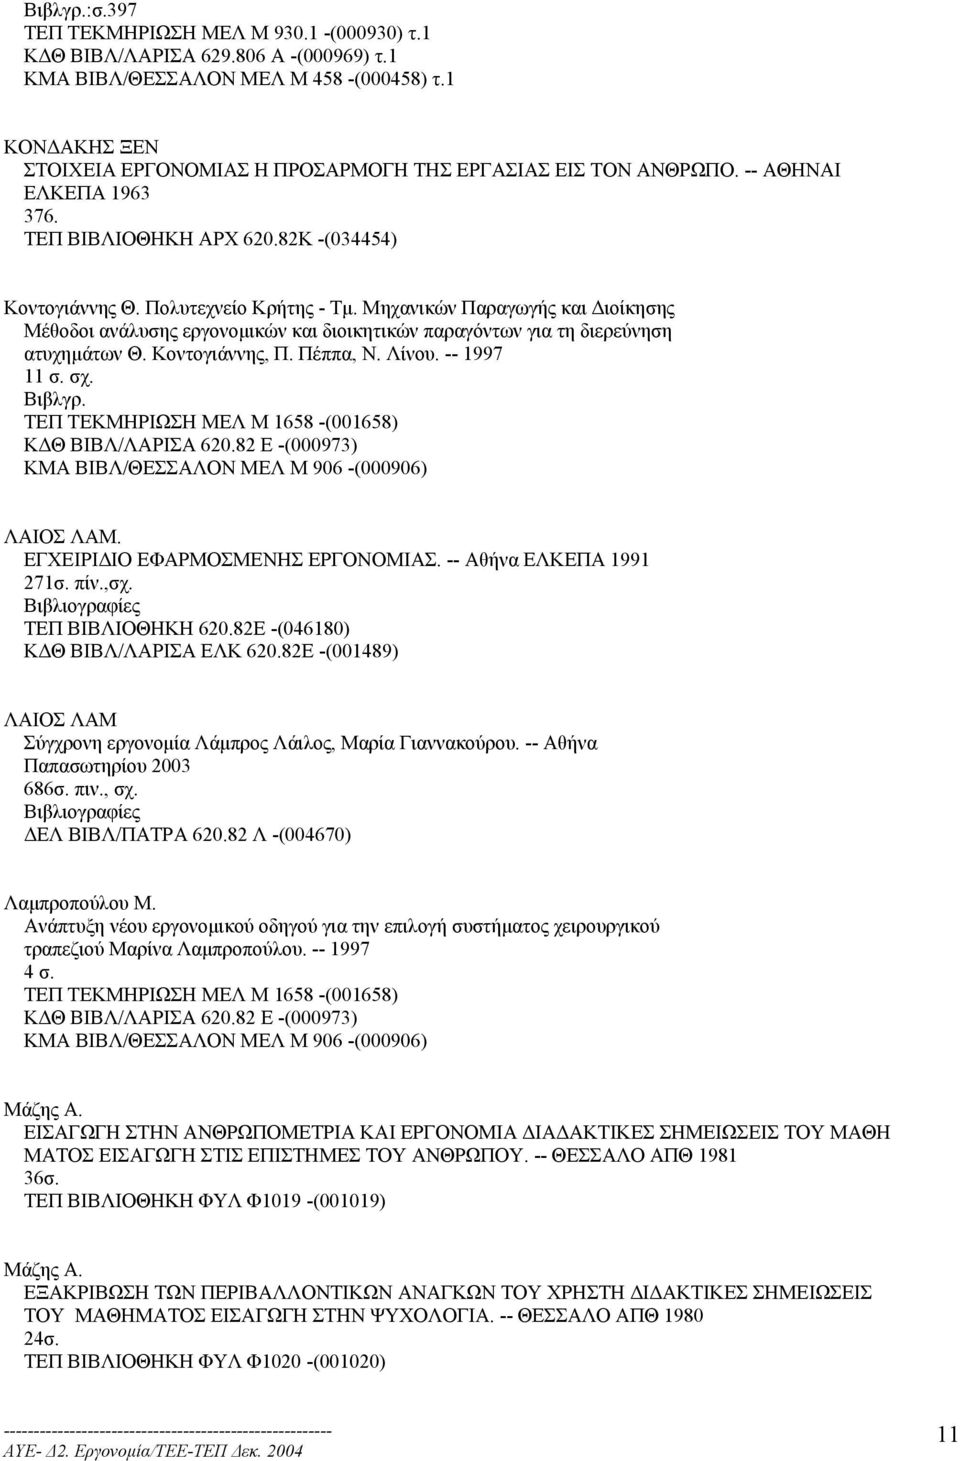 Μηχανικών Παραγωγής και ιοίκησης Μέθοδοι ανάλυσης εργονοµικών και διοικητικών παραγόντων για τη διερεύνηση ατυχηµάτων Θ. Κοντογιάννης, Π. Πέππα, Ν. Λίνου. -- 1997 11 σ. σχ. ΛΑΙΟΣ ΛΑΜ.